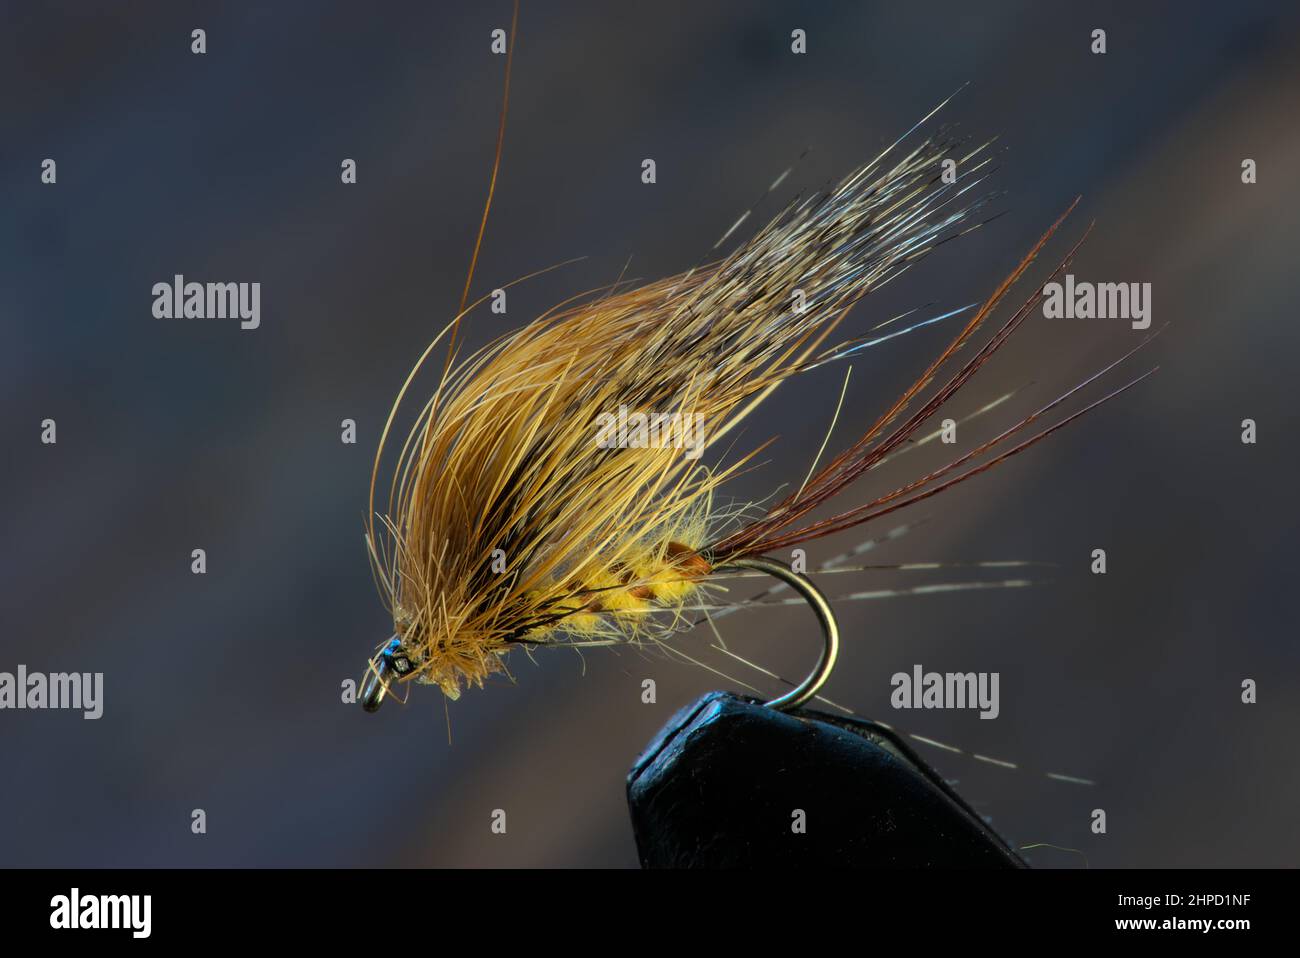 handmade fishing fly, fly tying Stock Photo